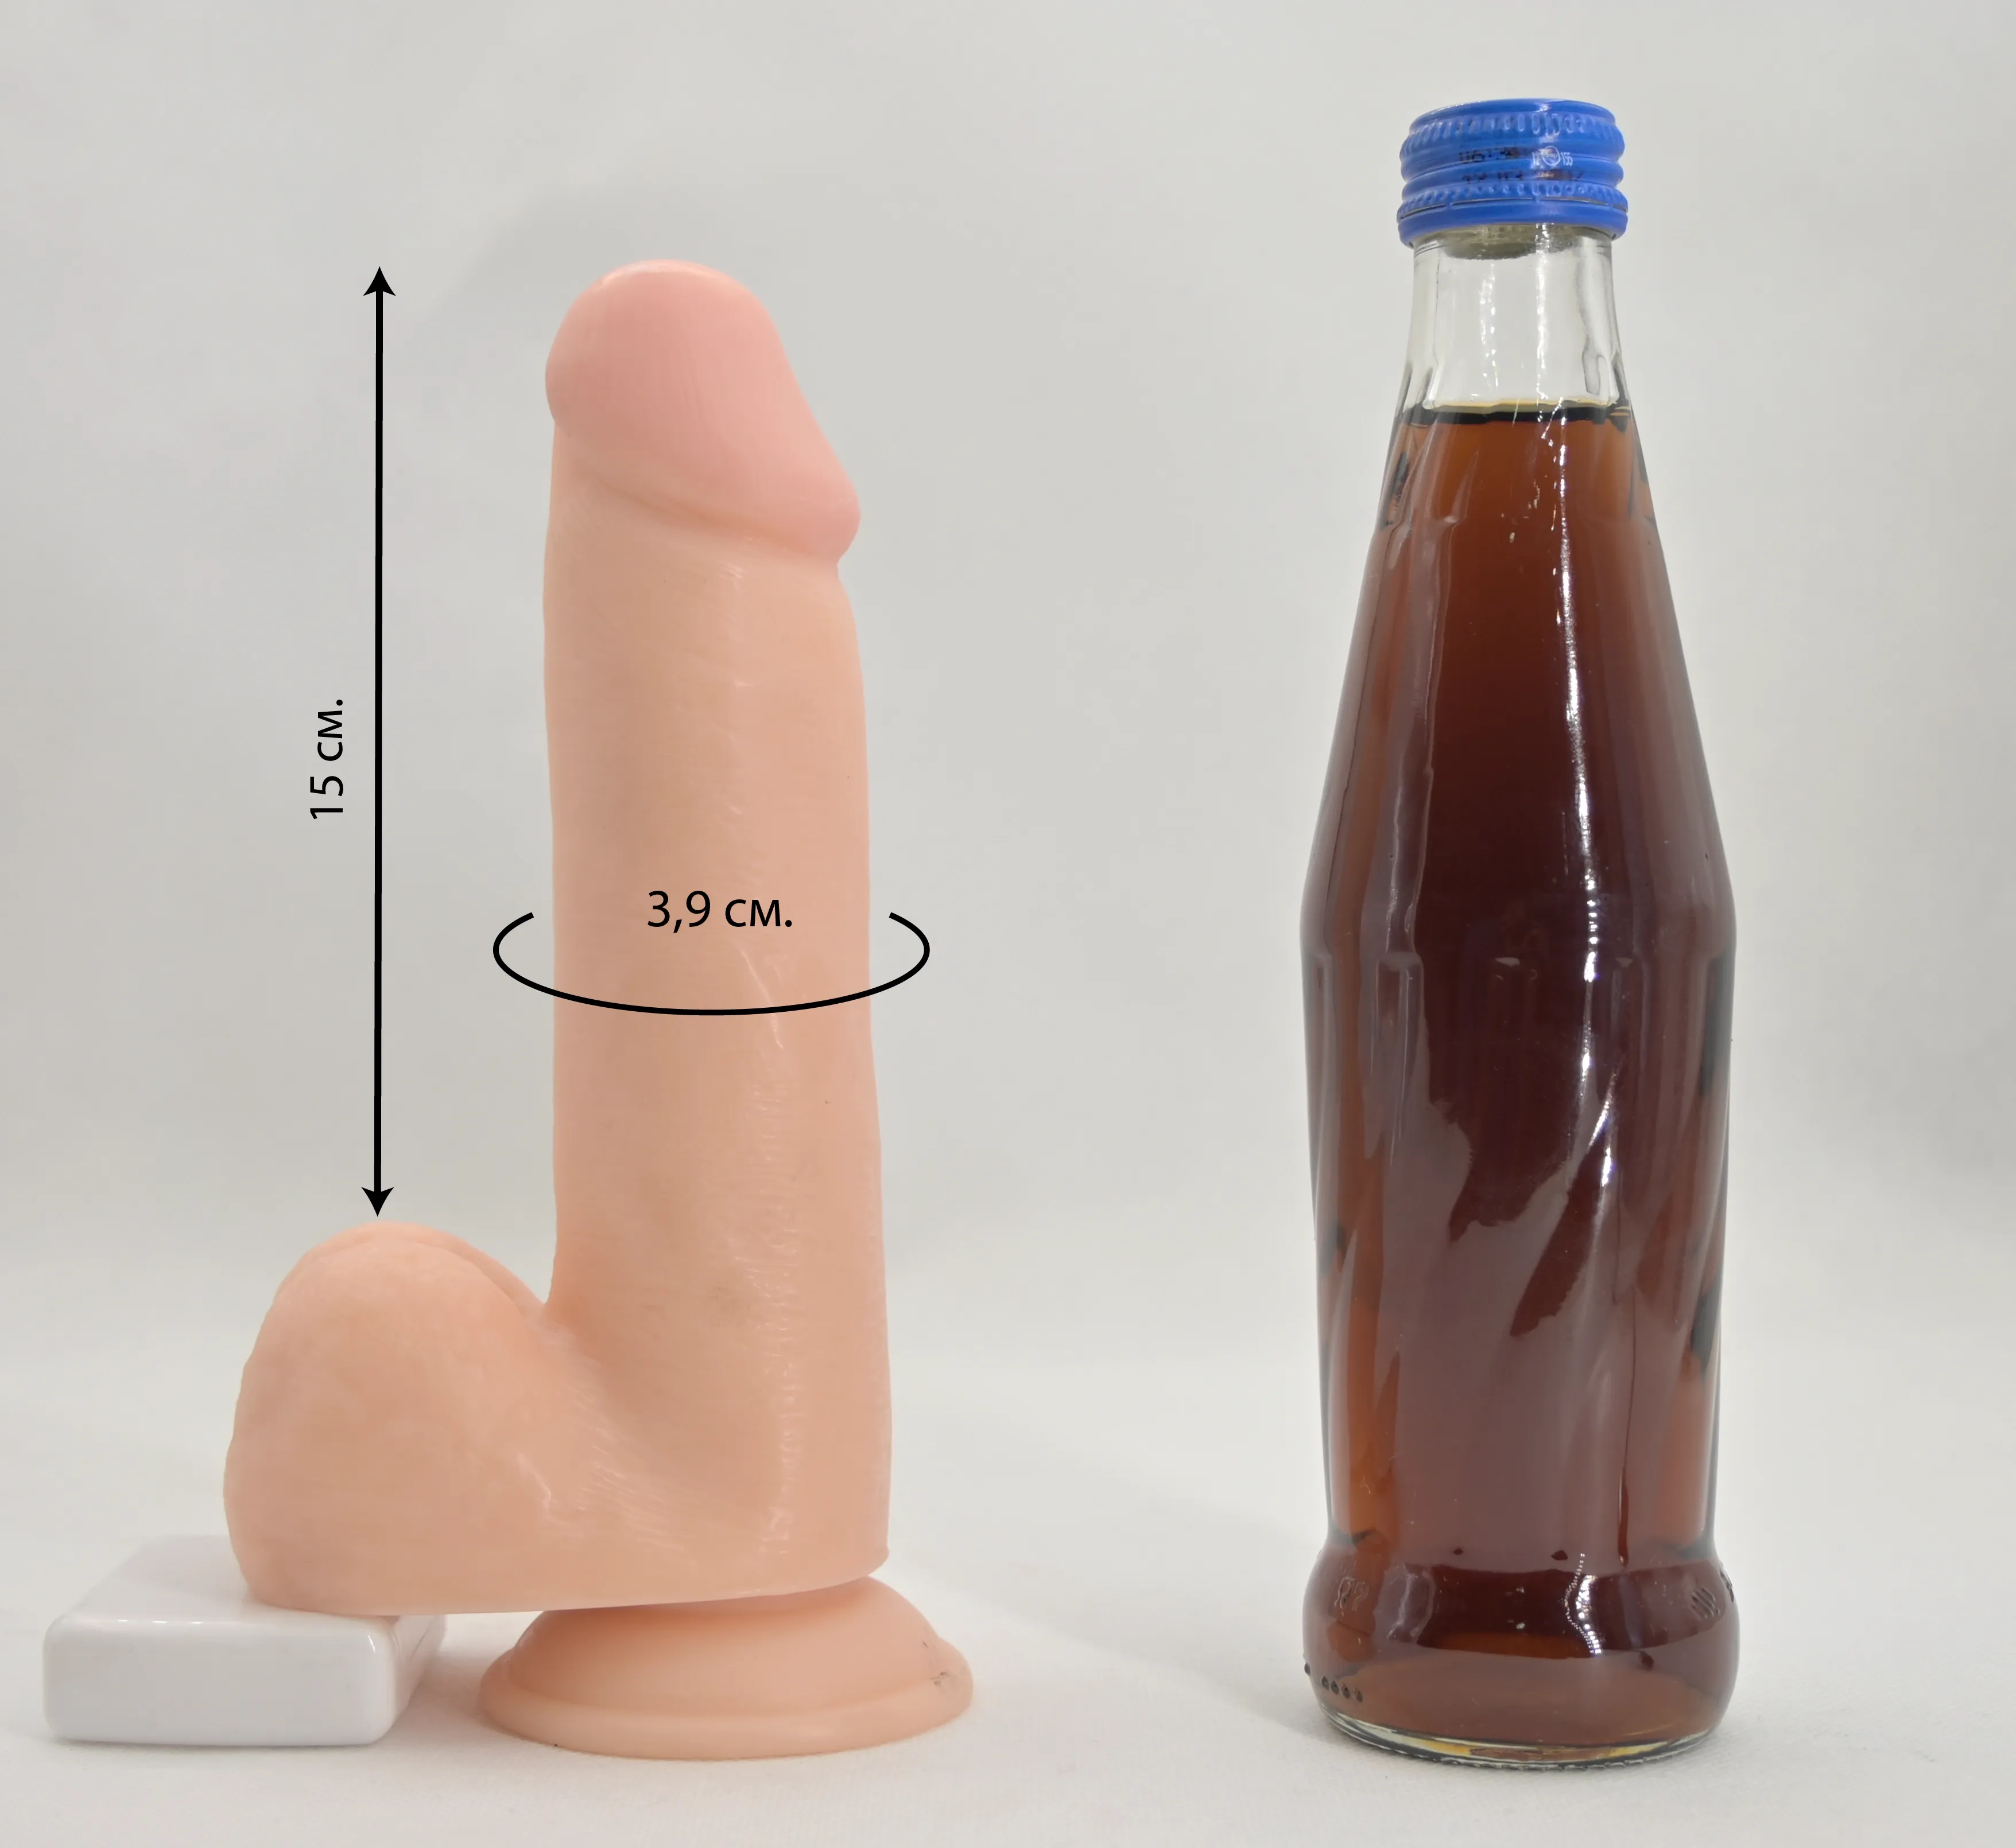 Размеры дилдо Nigel Nevin и сравнение с бутылкой 0,33 л.